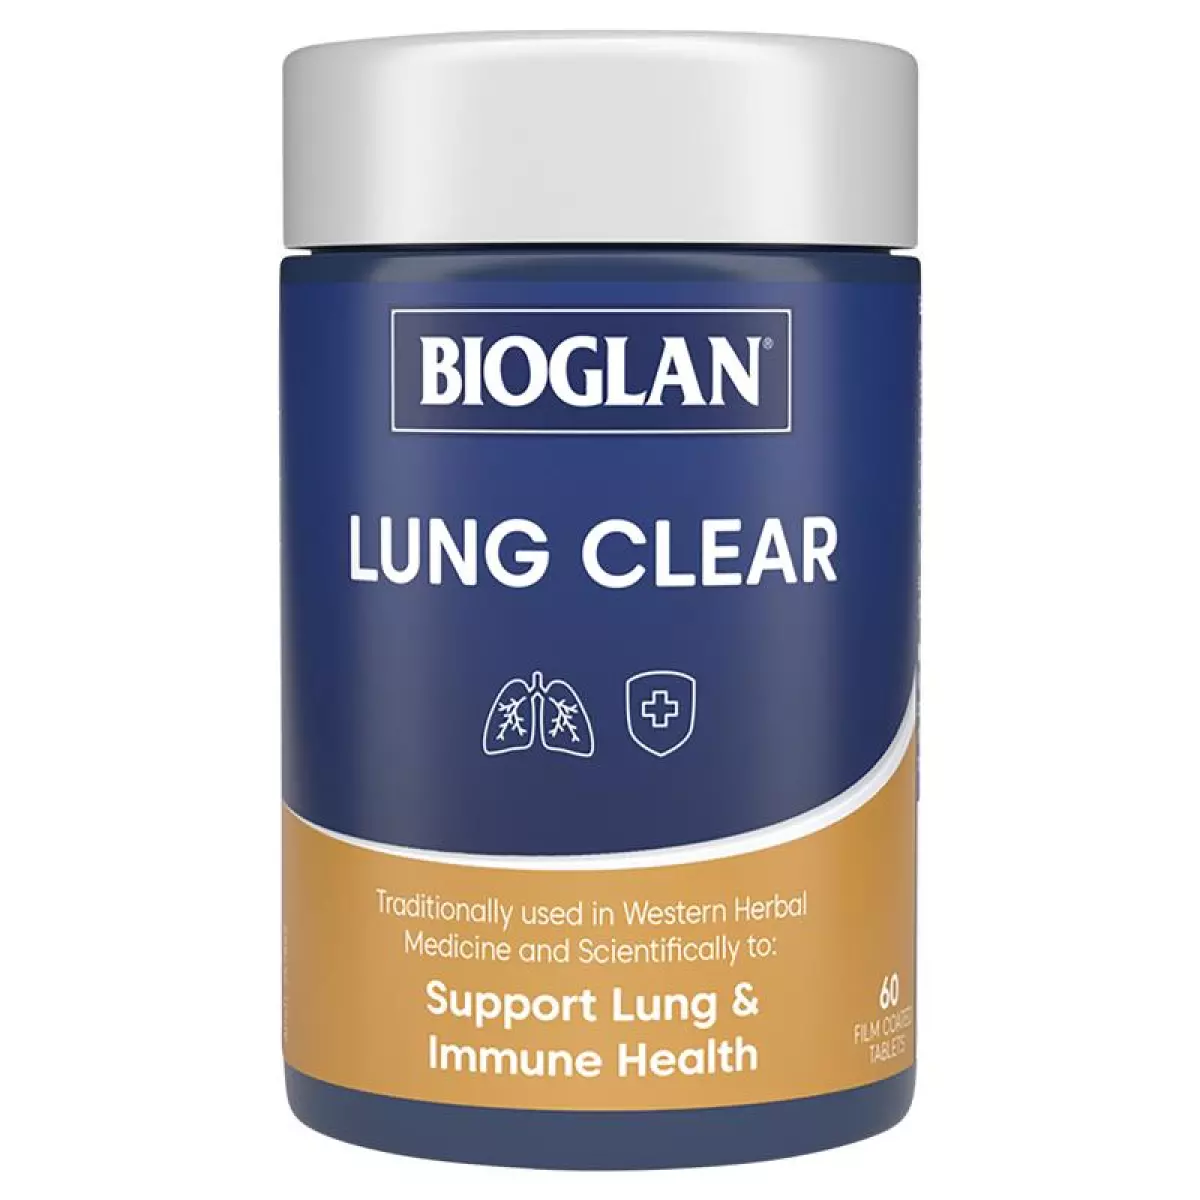 Viên uống thanh lọc bổ phổi Bioglan Lung Clear